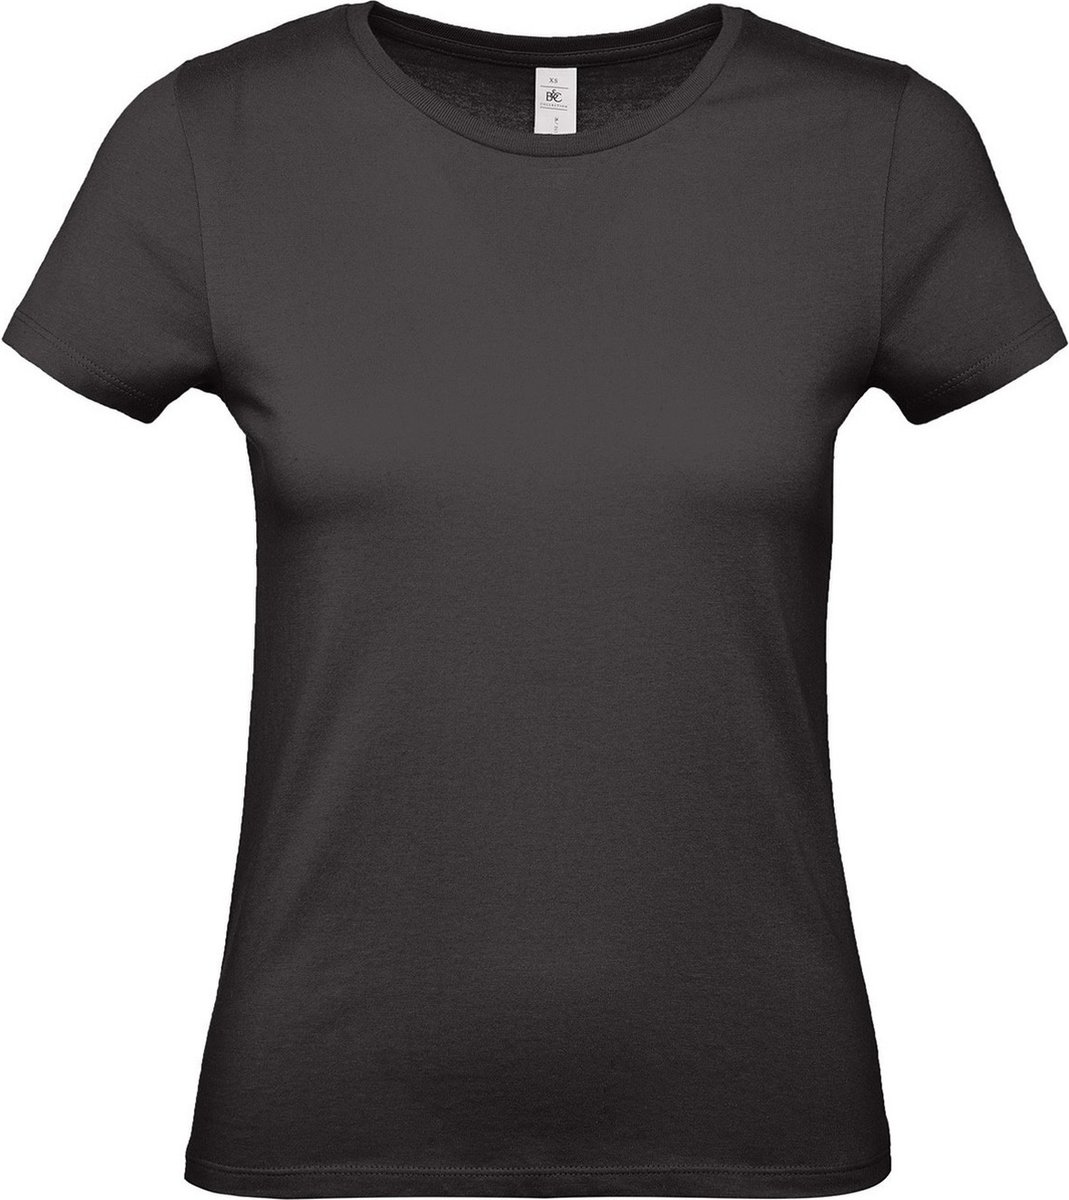 Zwart basic t-shirts met ronde hals voor dames - katoen - 145 grams - zwarte shirts / kleding L (40)